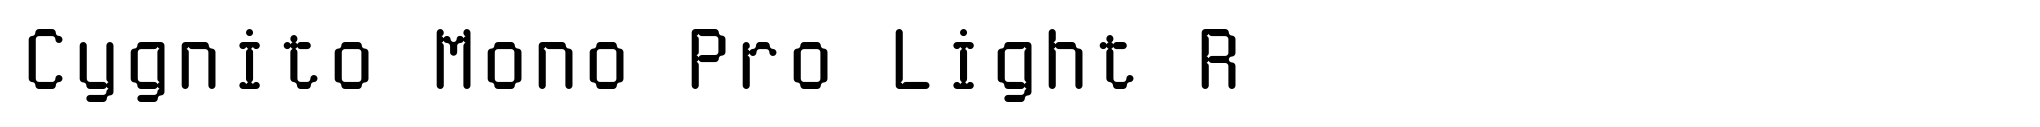 Cygnito Mono Pro Light R image